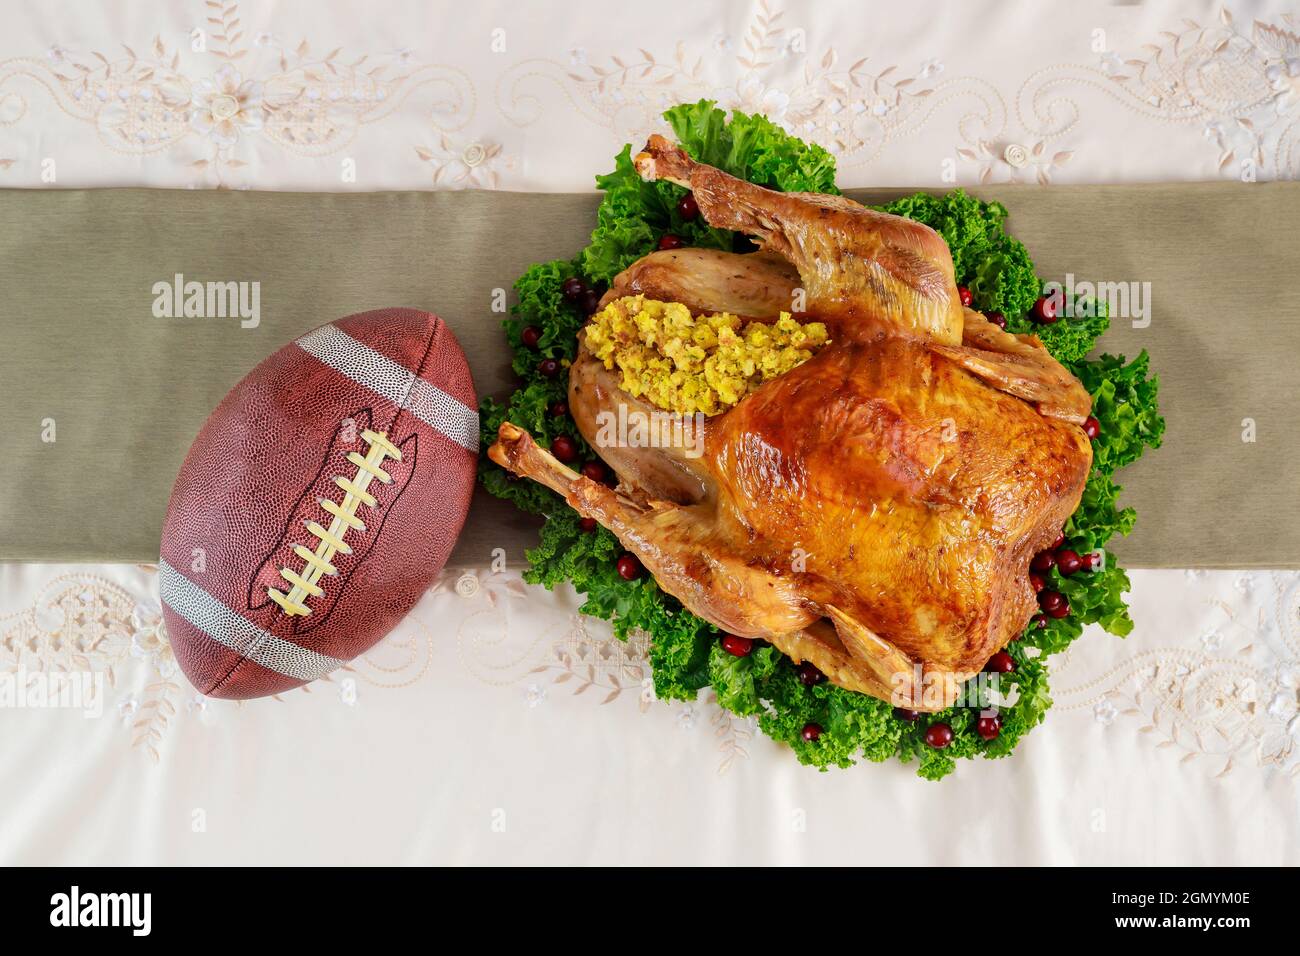 Thanksgiving Football Stock Illustrations – 828 Thanksgiving